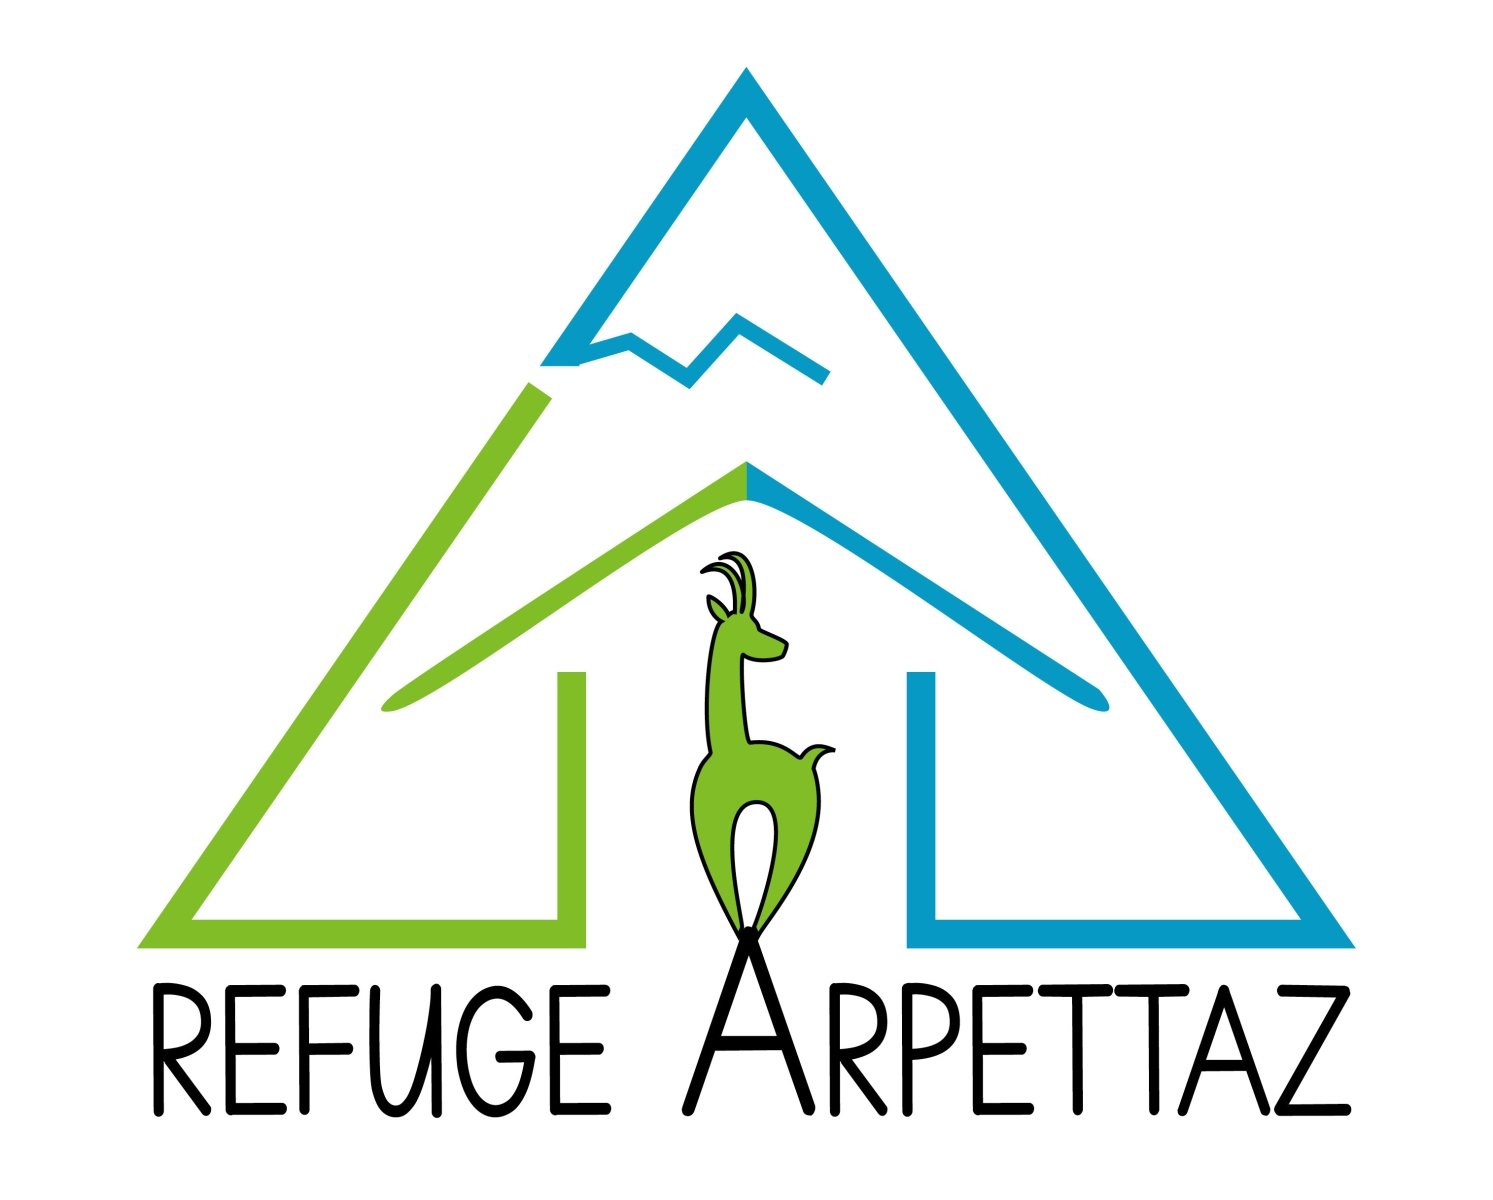  Refuge Arpettaz